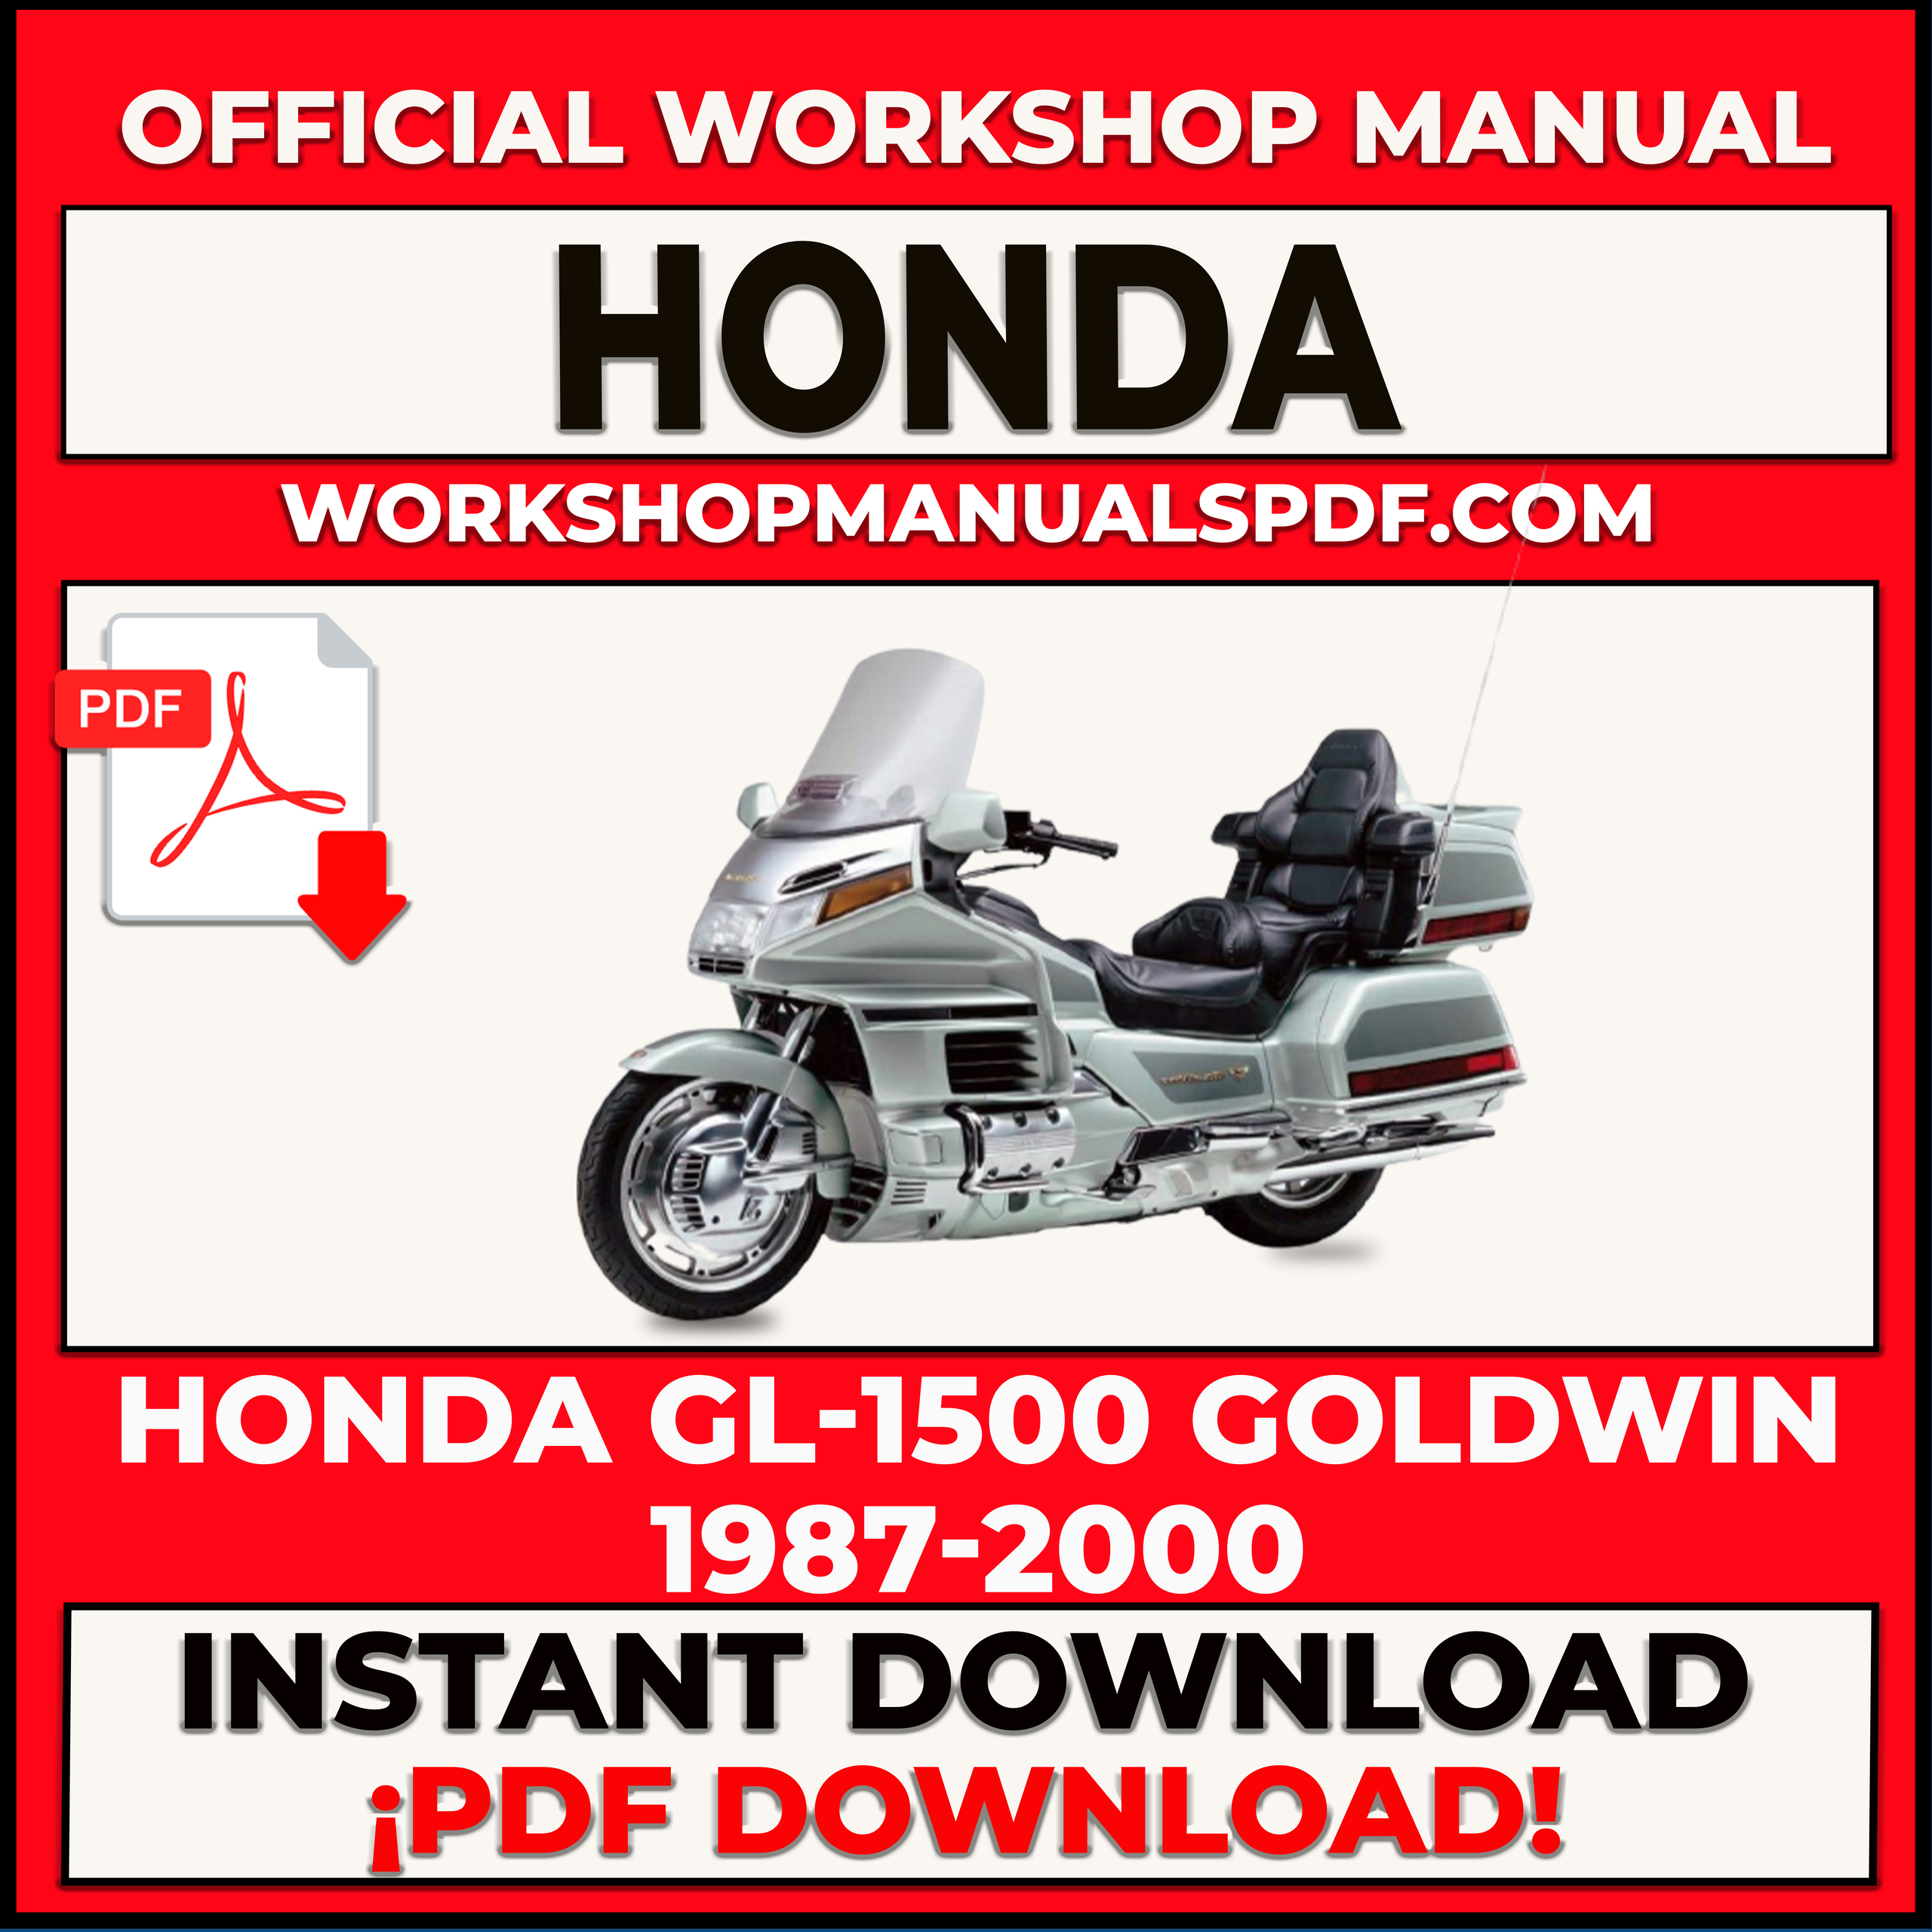 Honda GL-1500 Goldwing 1987-2000 Workshop Repair Manual